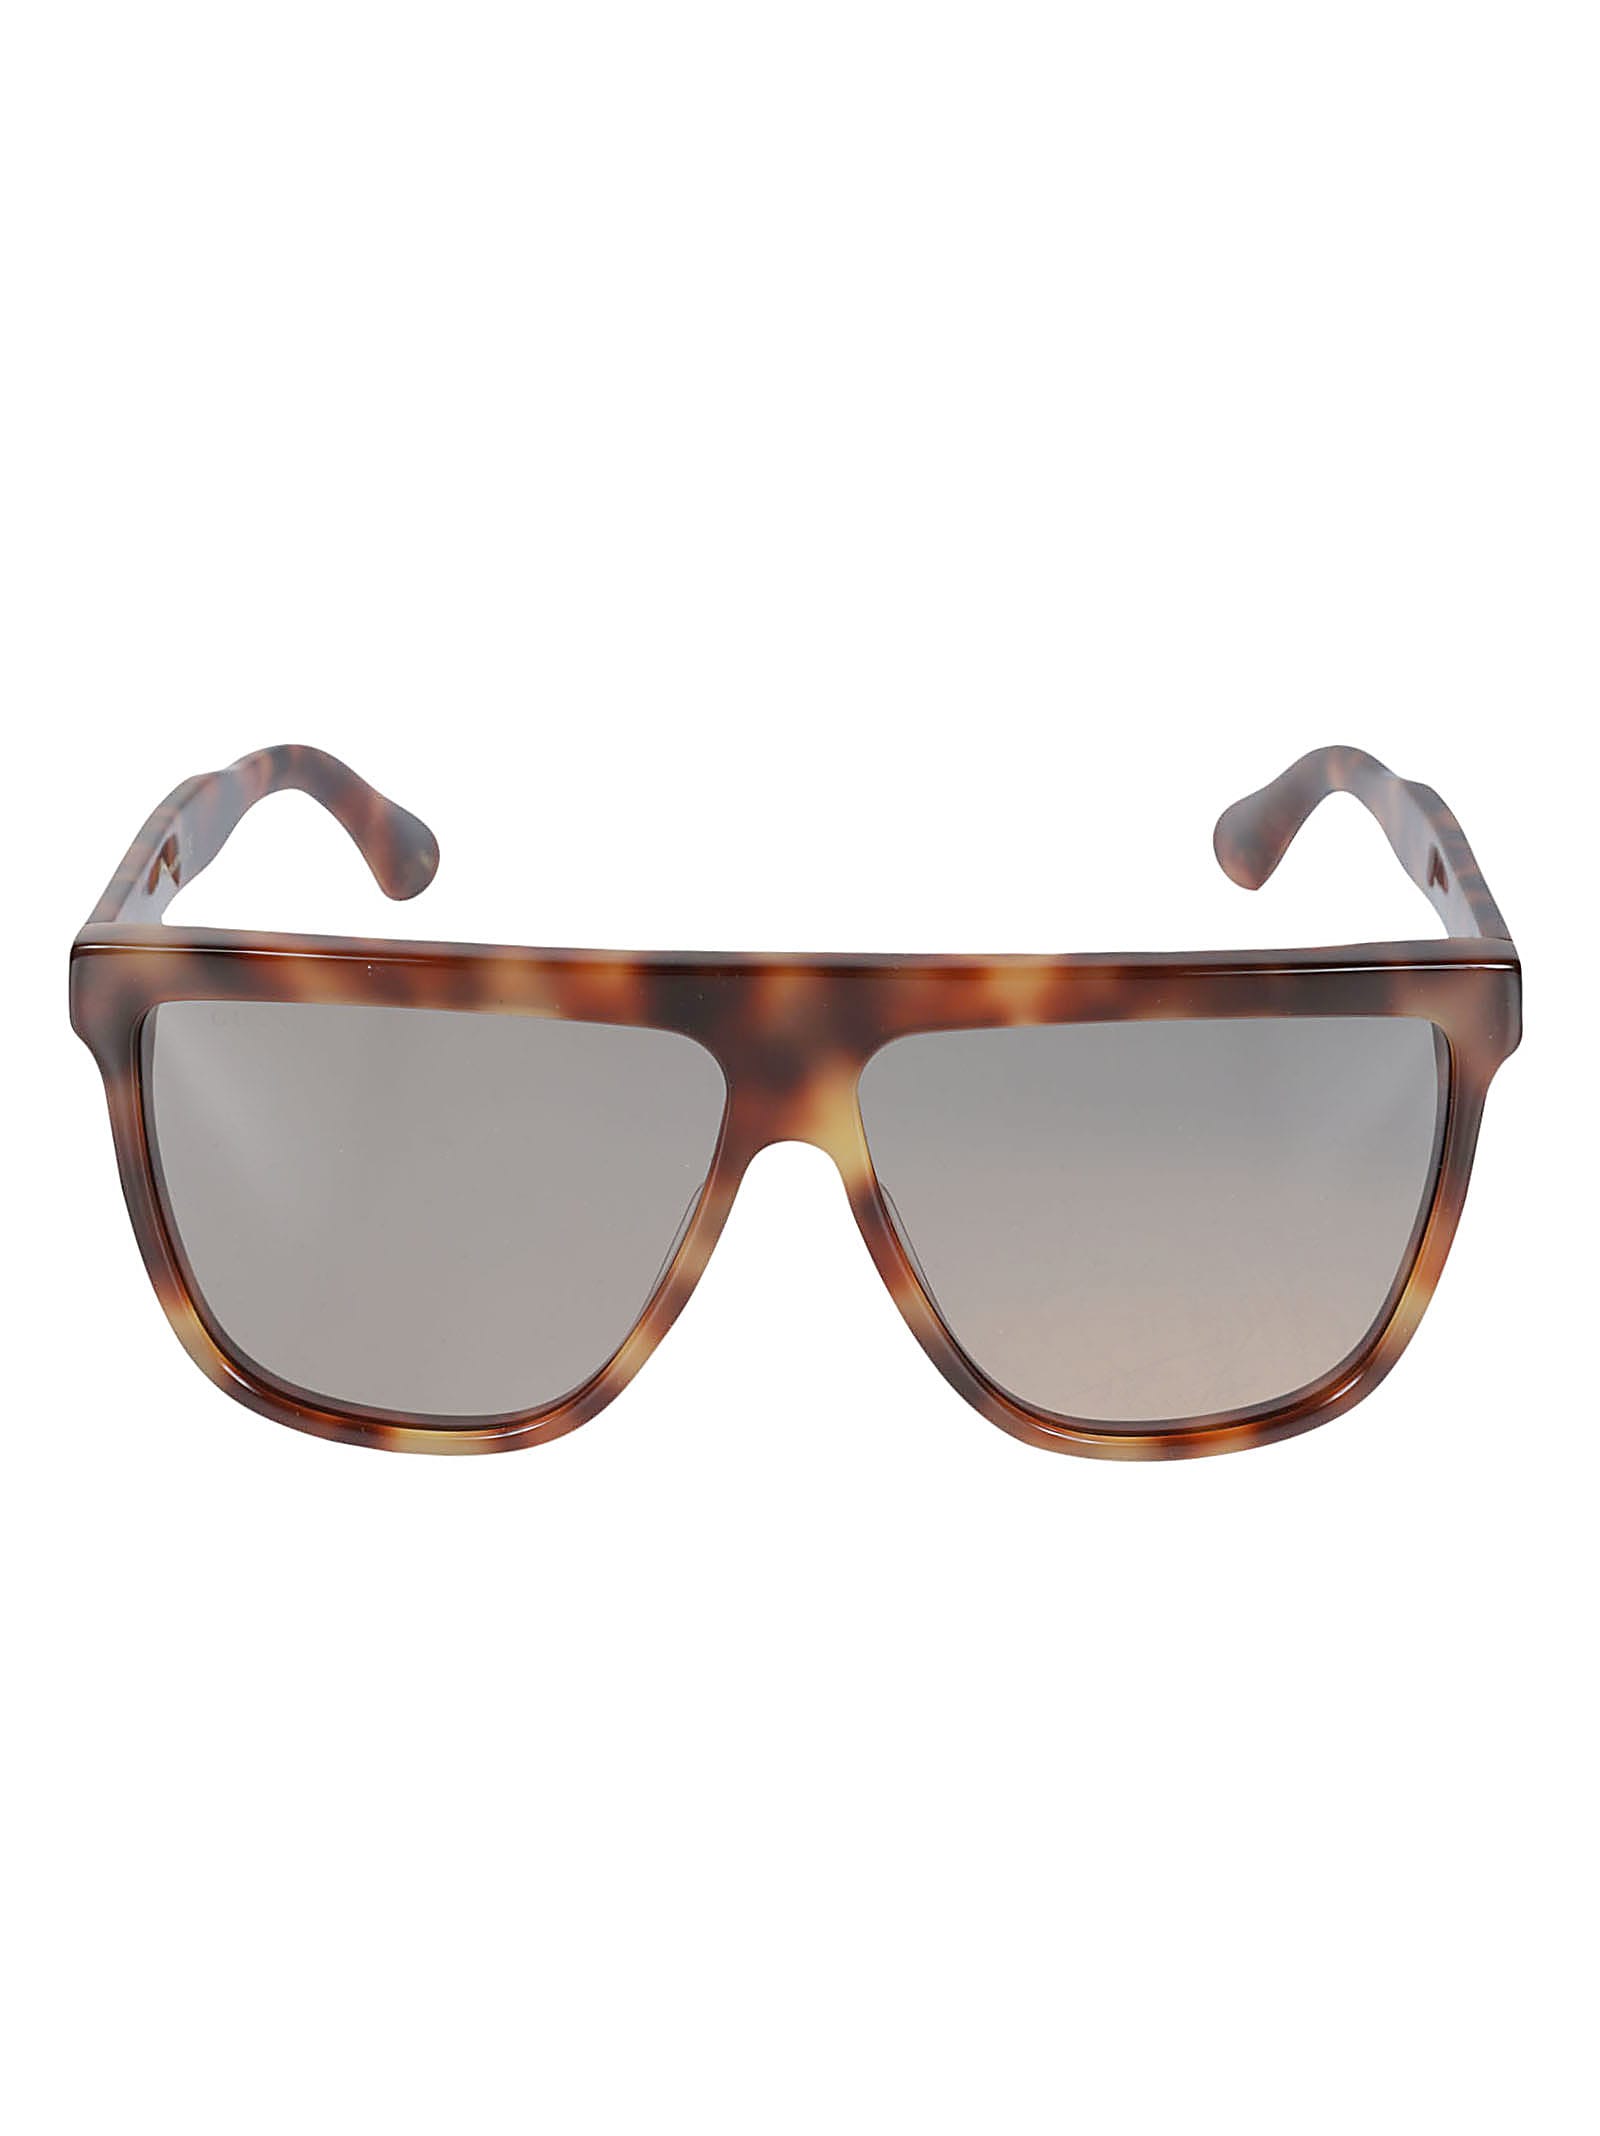 Gucci Retro Squared Sunglasses